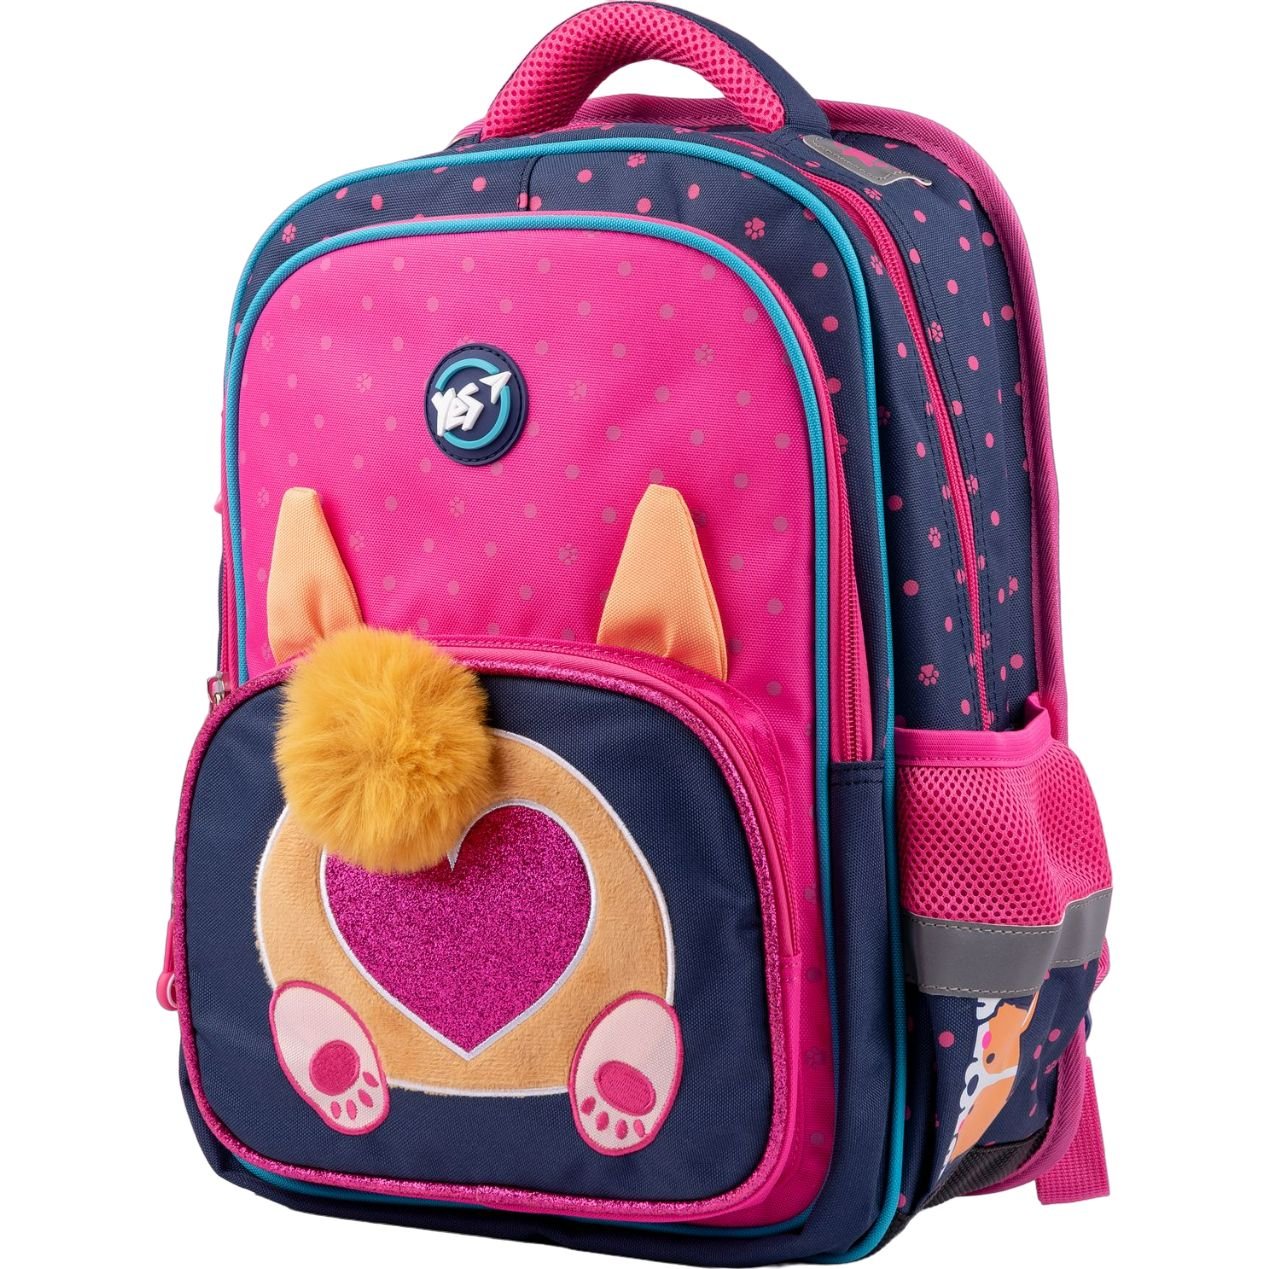 Рюкзак Yes S-72 Puppy, рожевий з синім (559033) - фото 1